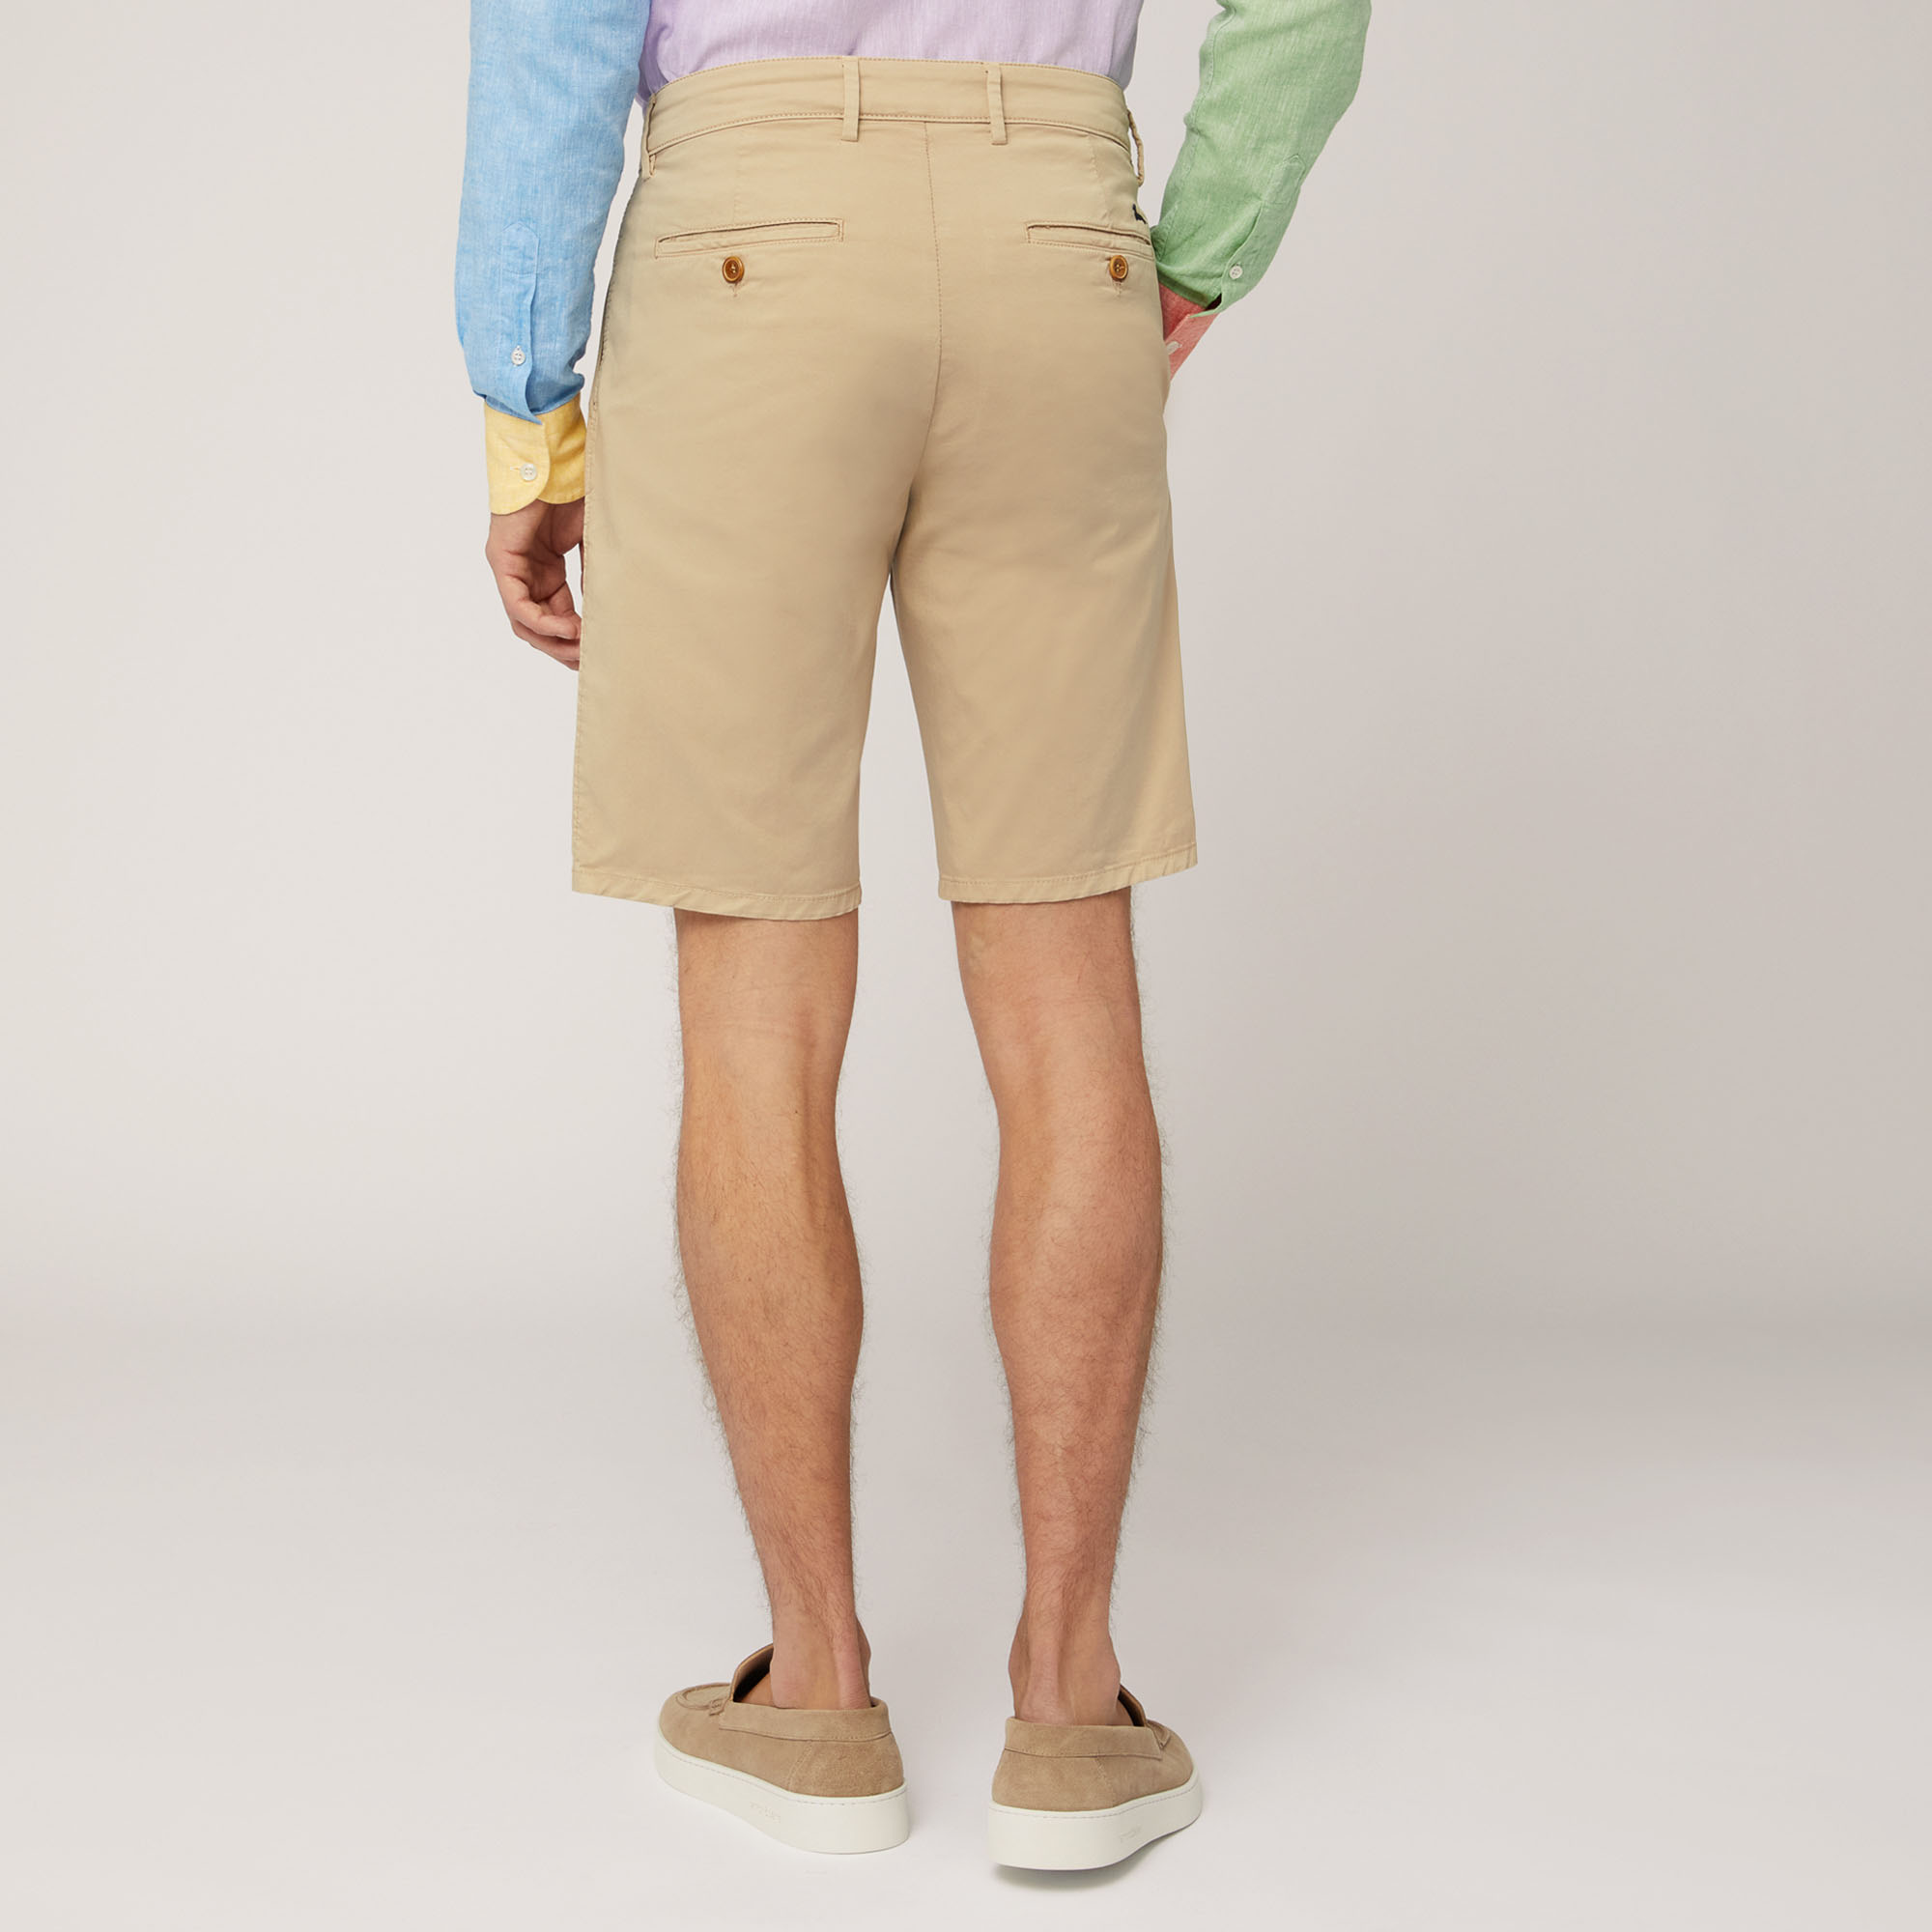 Regular Fit Bermuda Shorts, Beige, large image number 1